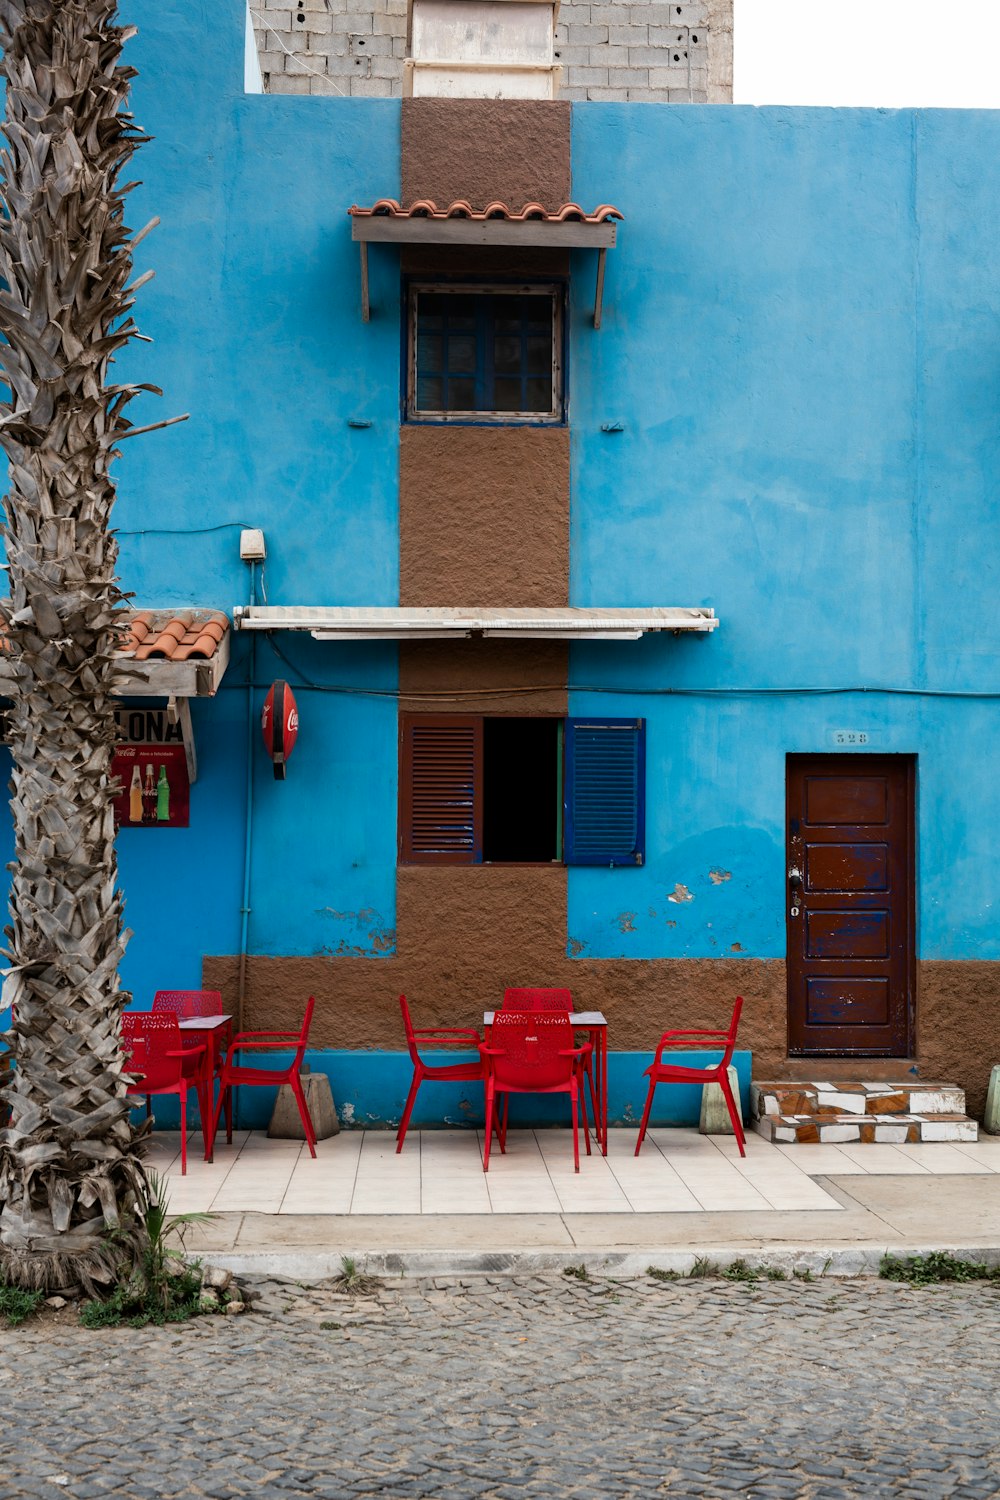 Chaises et tables en plastique rouge près d’un bâtiment en béton bleu